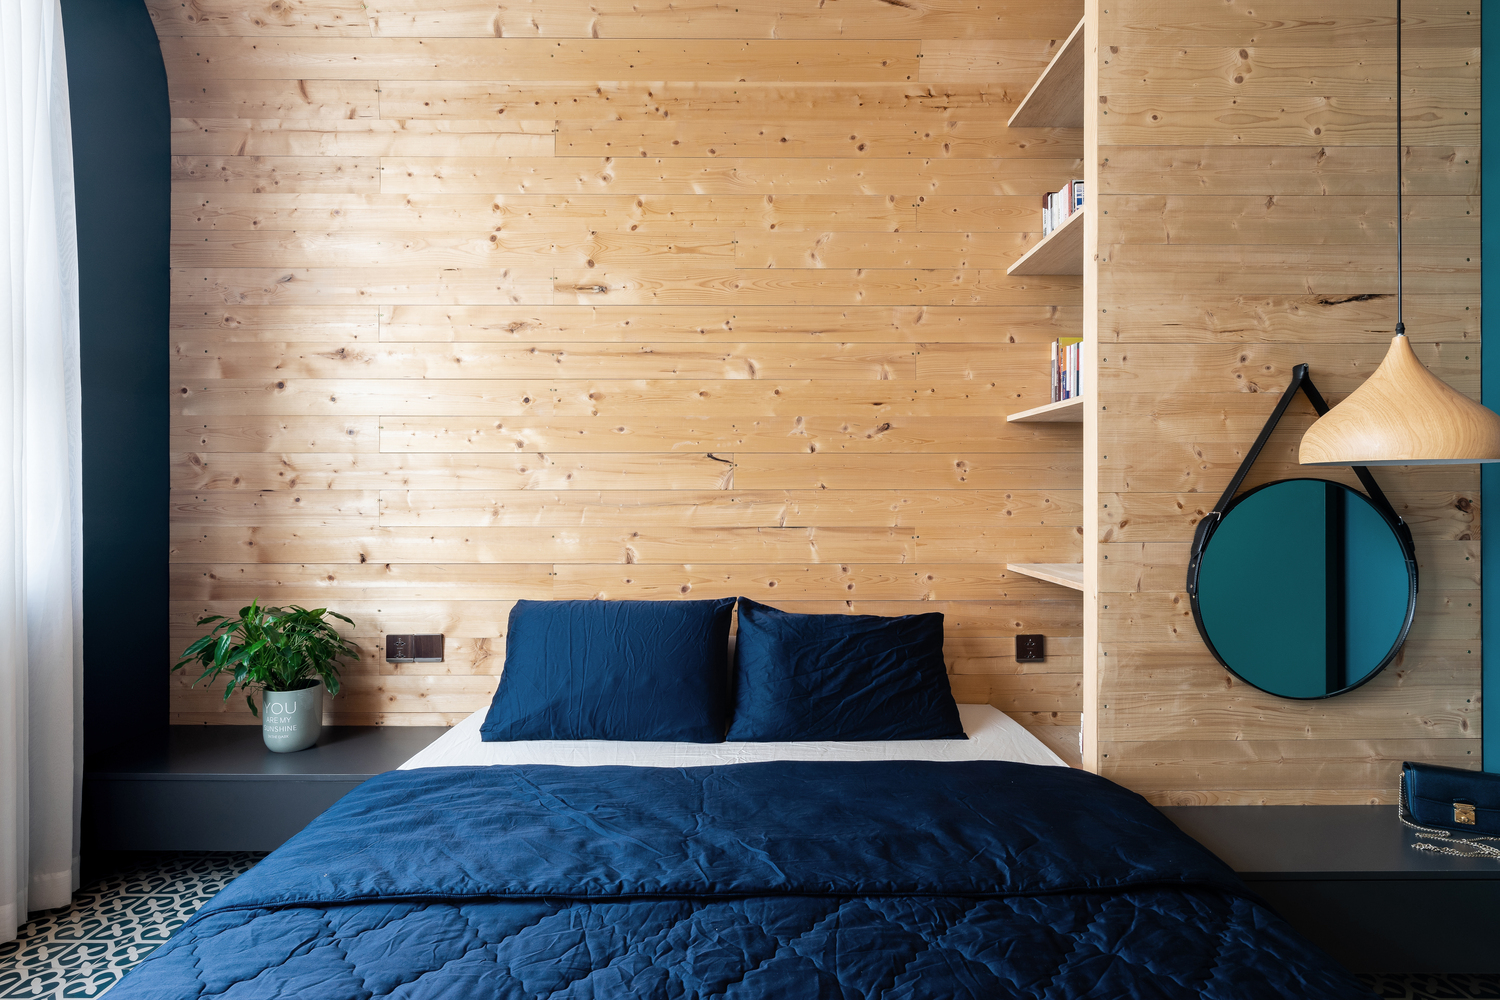 hình ảnh phòng ngủ nhỏ với tường đầu giường ốp gỗ, tủ kệ lưu trữ ngay cạnh, gương tròn trang trí, ga gối màu xanh nước biển